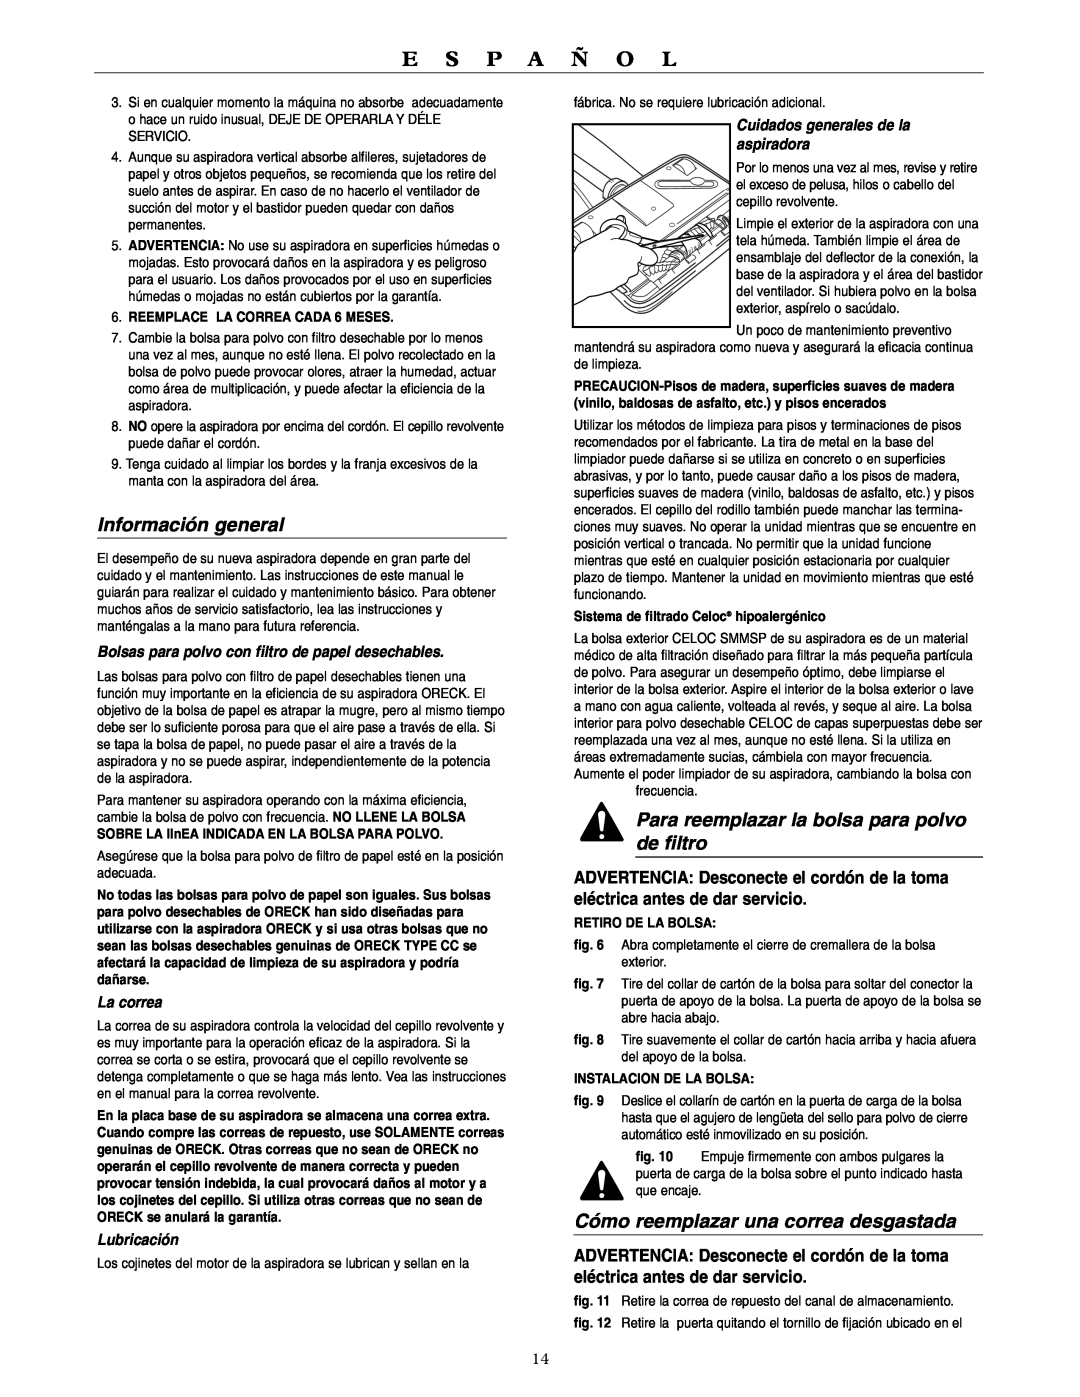 Oreck U4090H2 Información general, Para reemplazar la bolsa para polvo de filtro, Cómo reemplazar una correa desgastada 